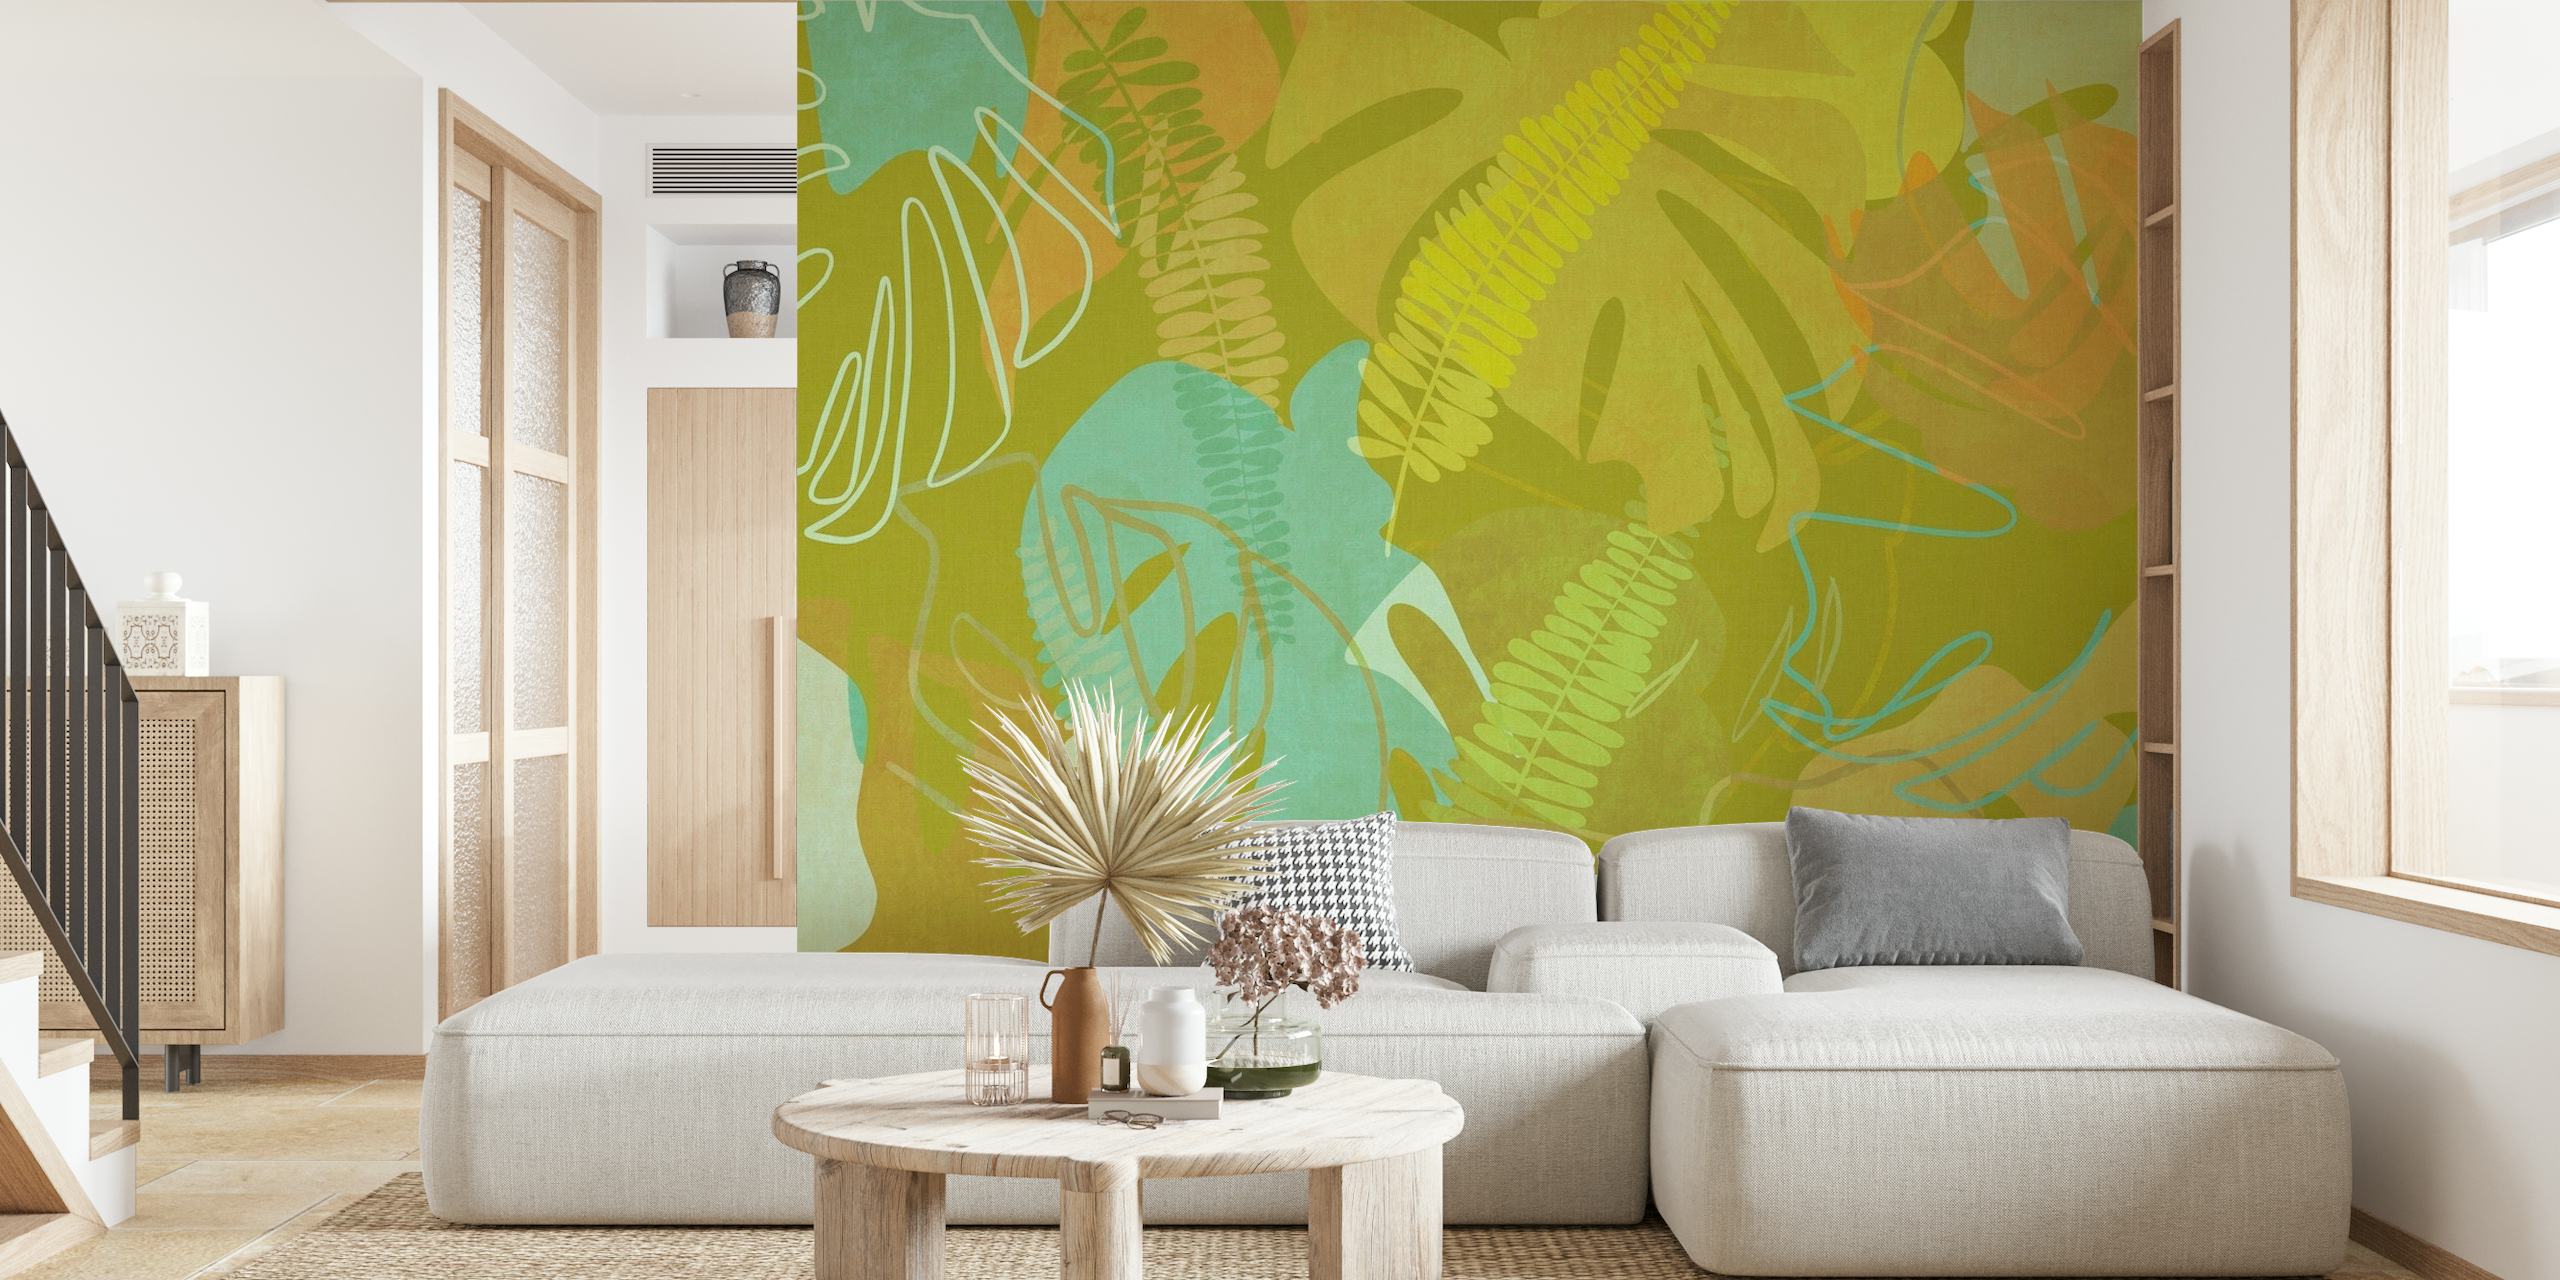 Fotomural vinílico de parede com padrão de folhas verdes exuberantes para decoração de interiores